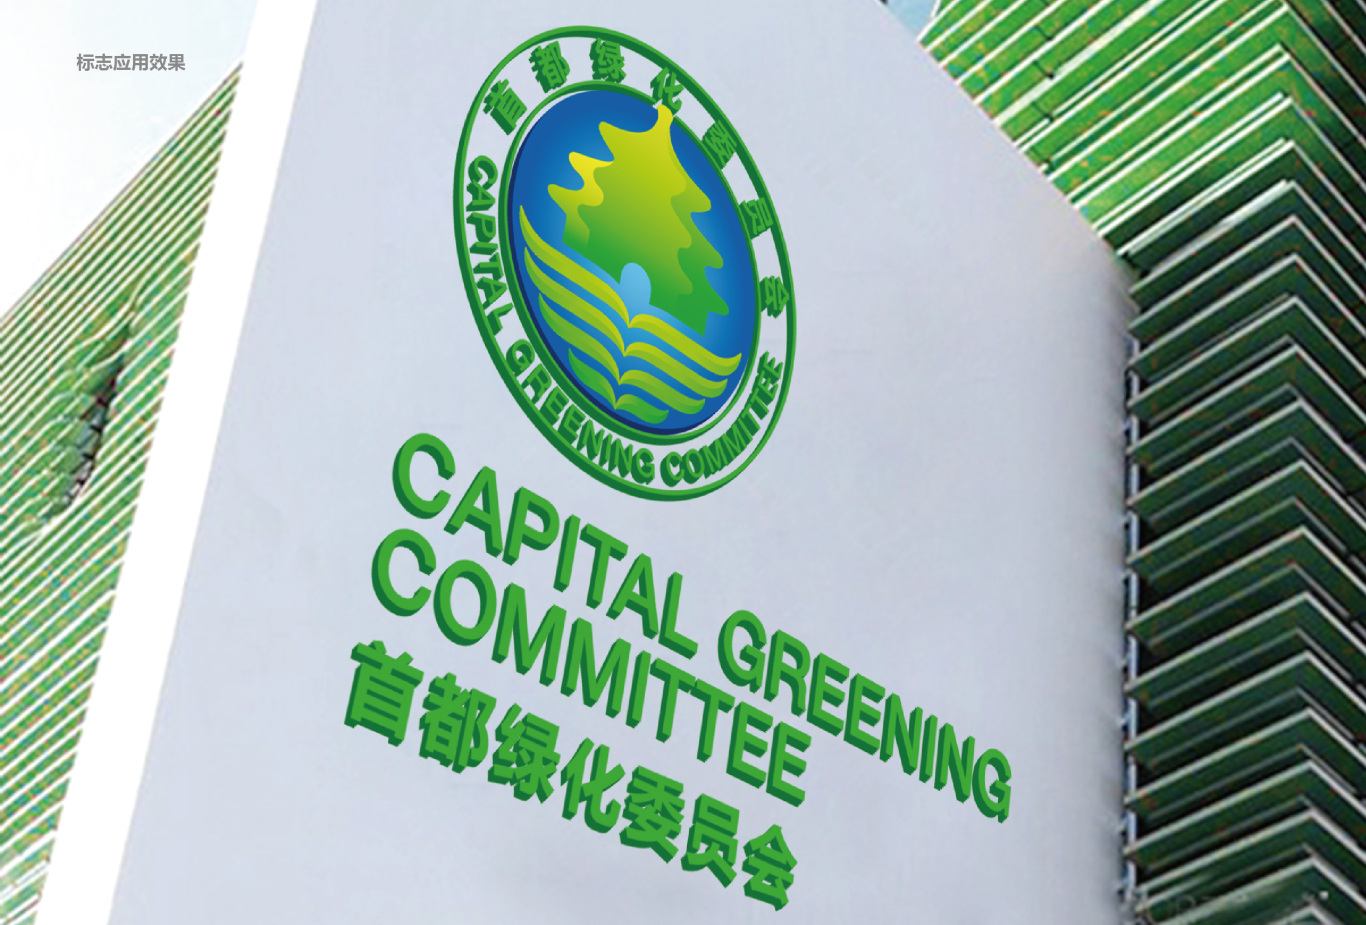 首都绿化委员会logo形象设计图7